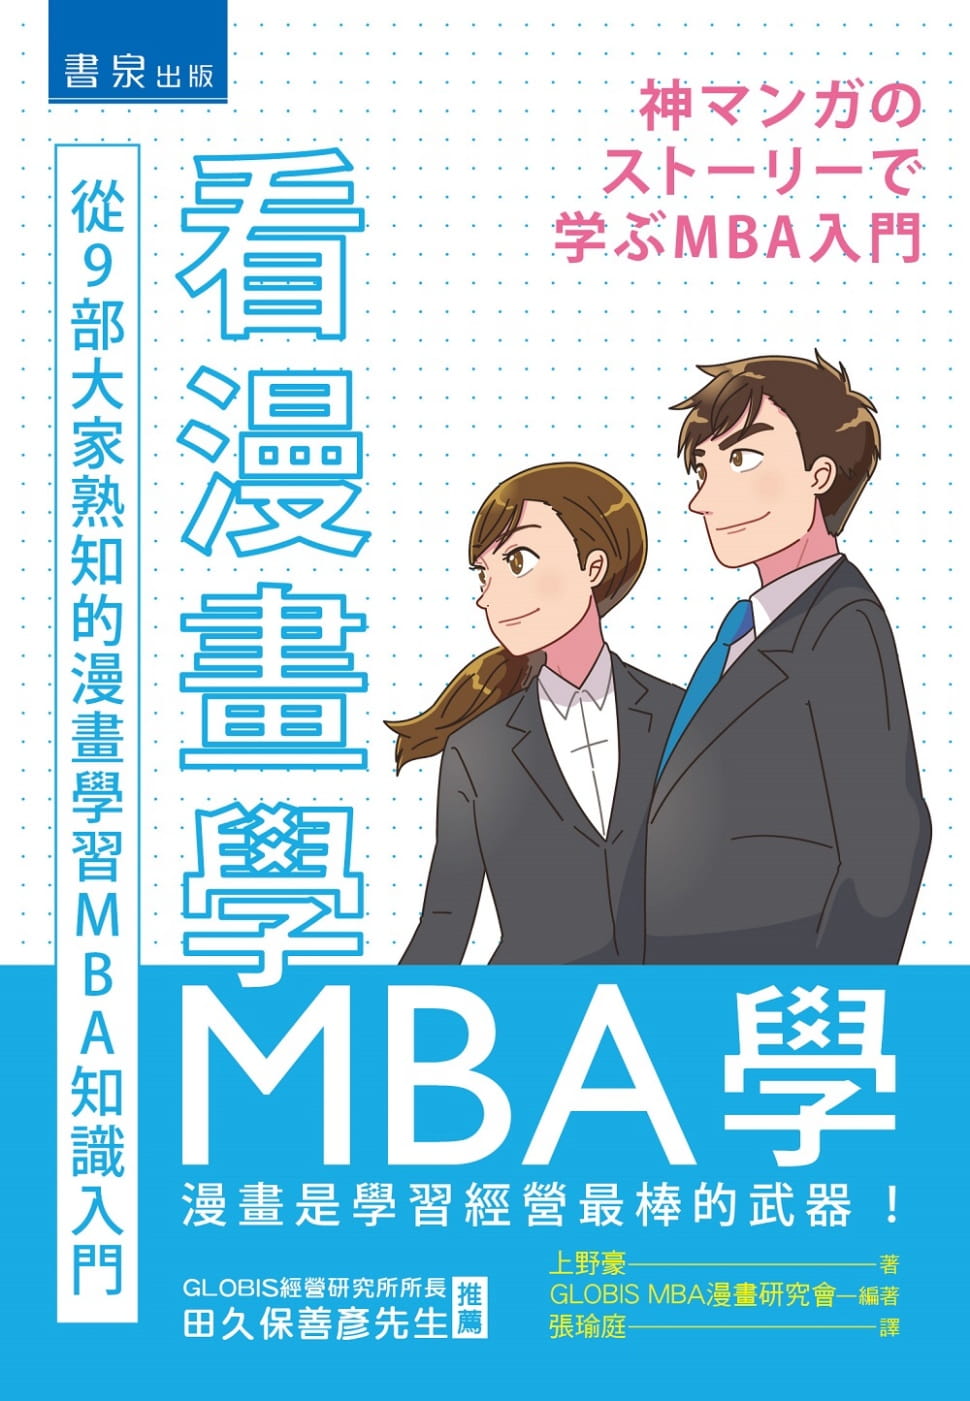 看漫畫學MBA學：從9部大家熟知的漫畫學習MBA知識入門